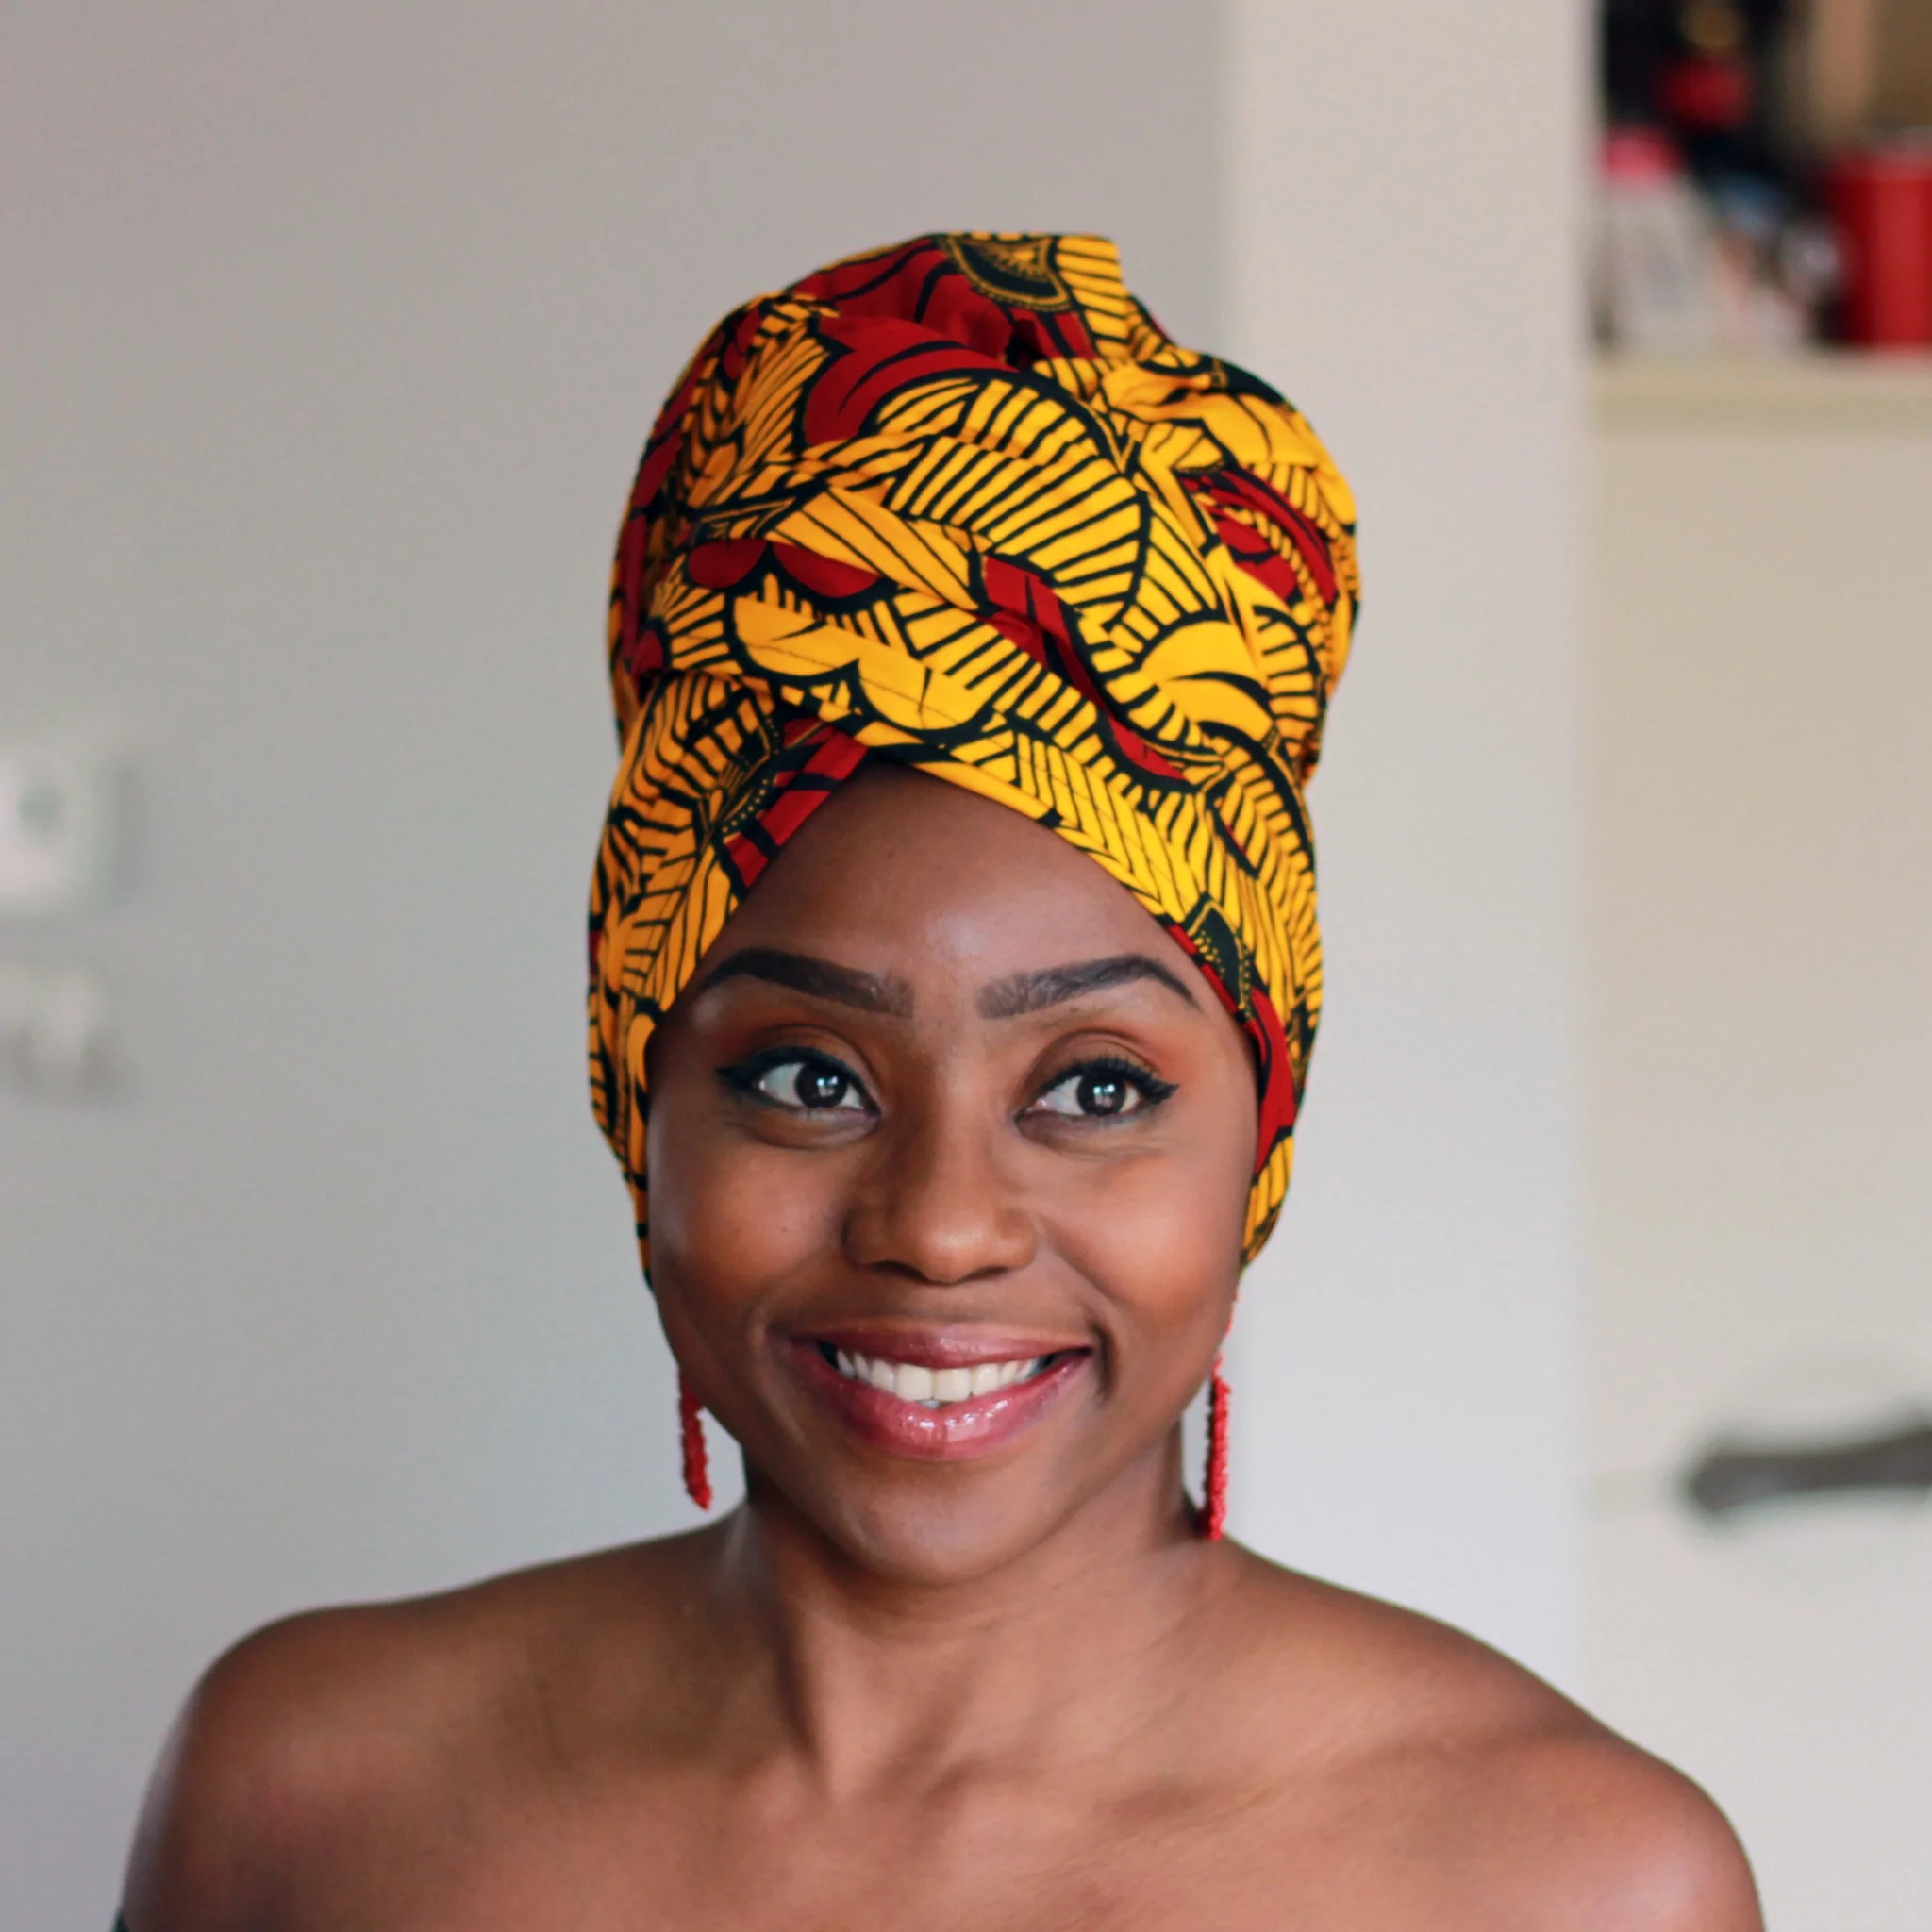 Afrikaanse goud/gele bloemen Vlisco hoofddoek/headwrap-wax print sjaal/hoofddoek/bandana-hoofdband katoen/Ankara stof